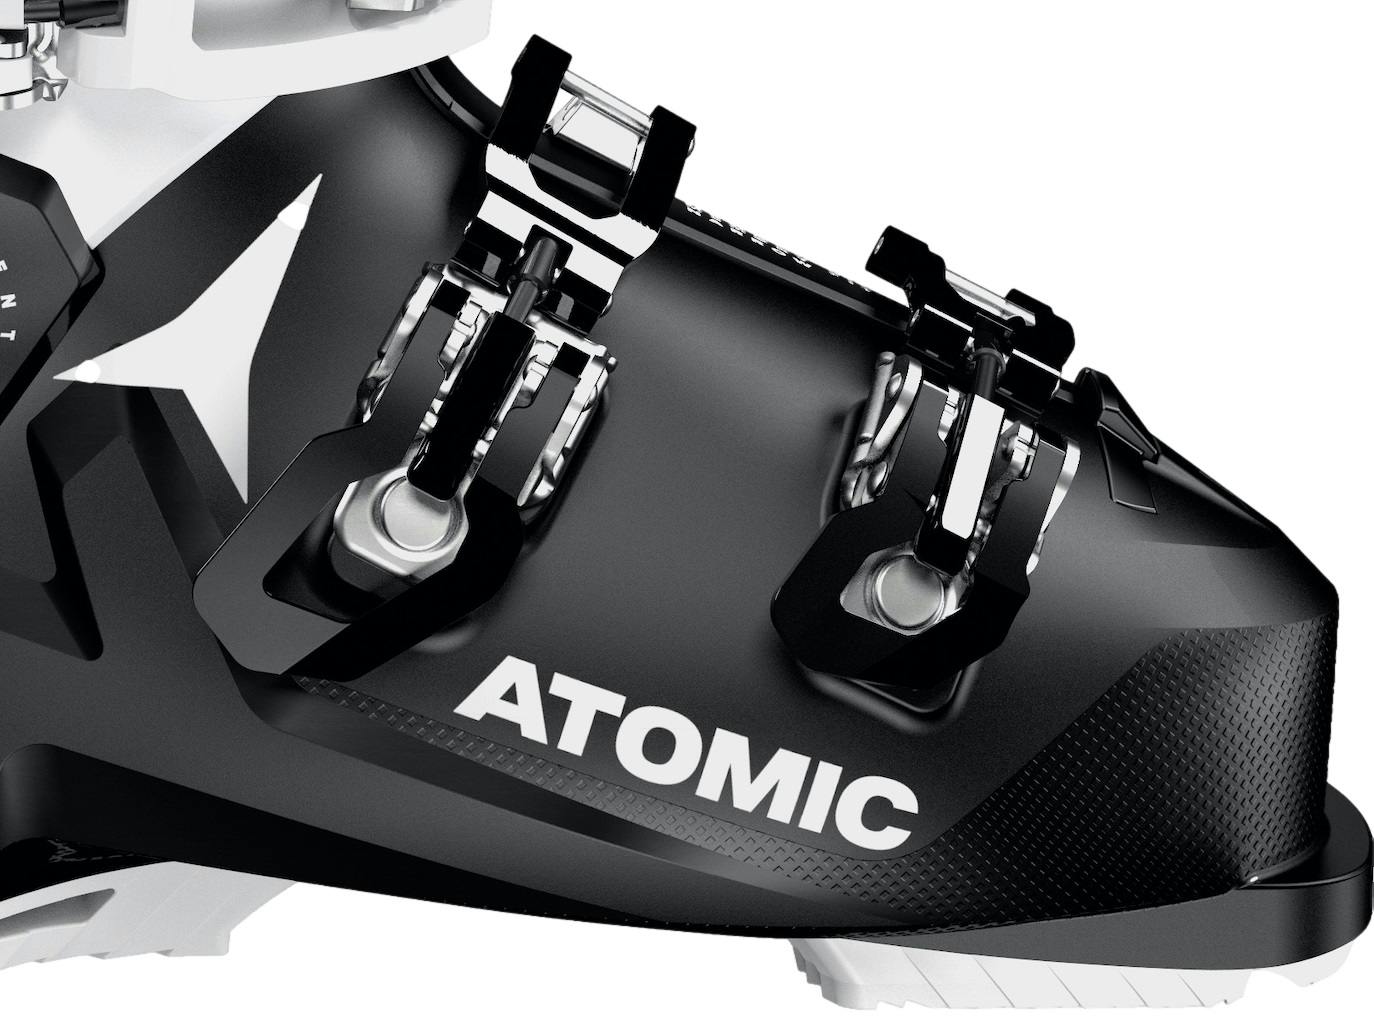 Atomic Hawx Ultra 85 W Ski Boots · Women's · 2023